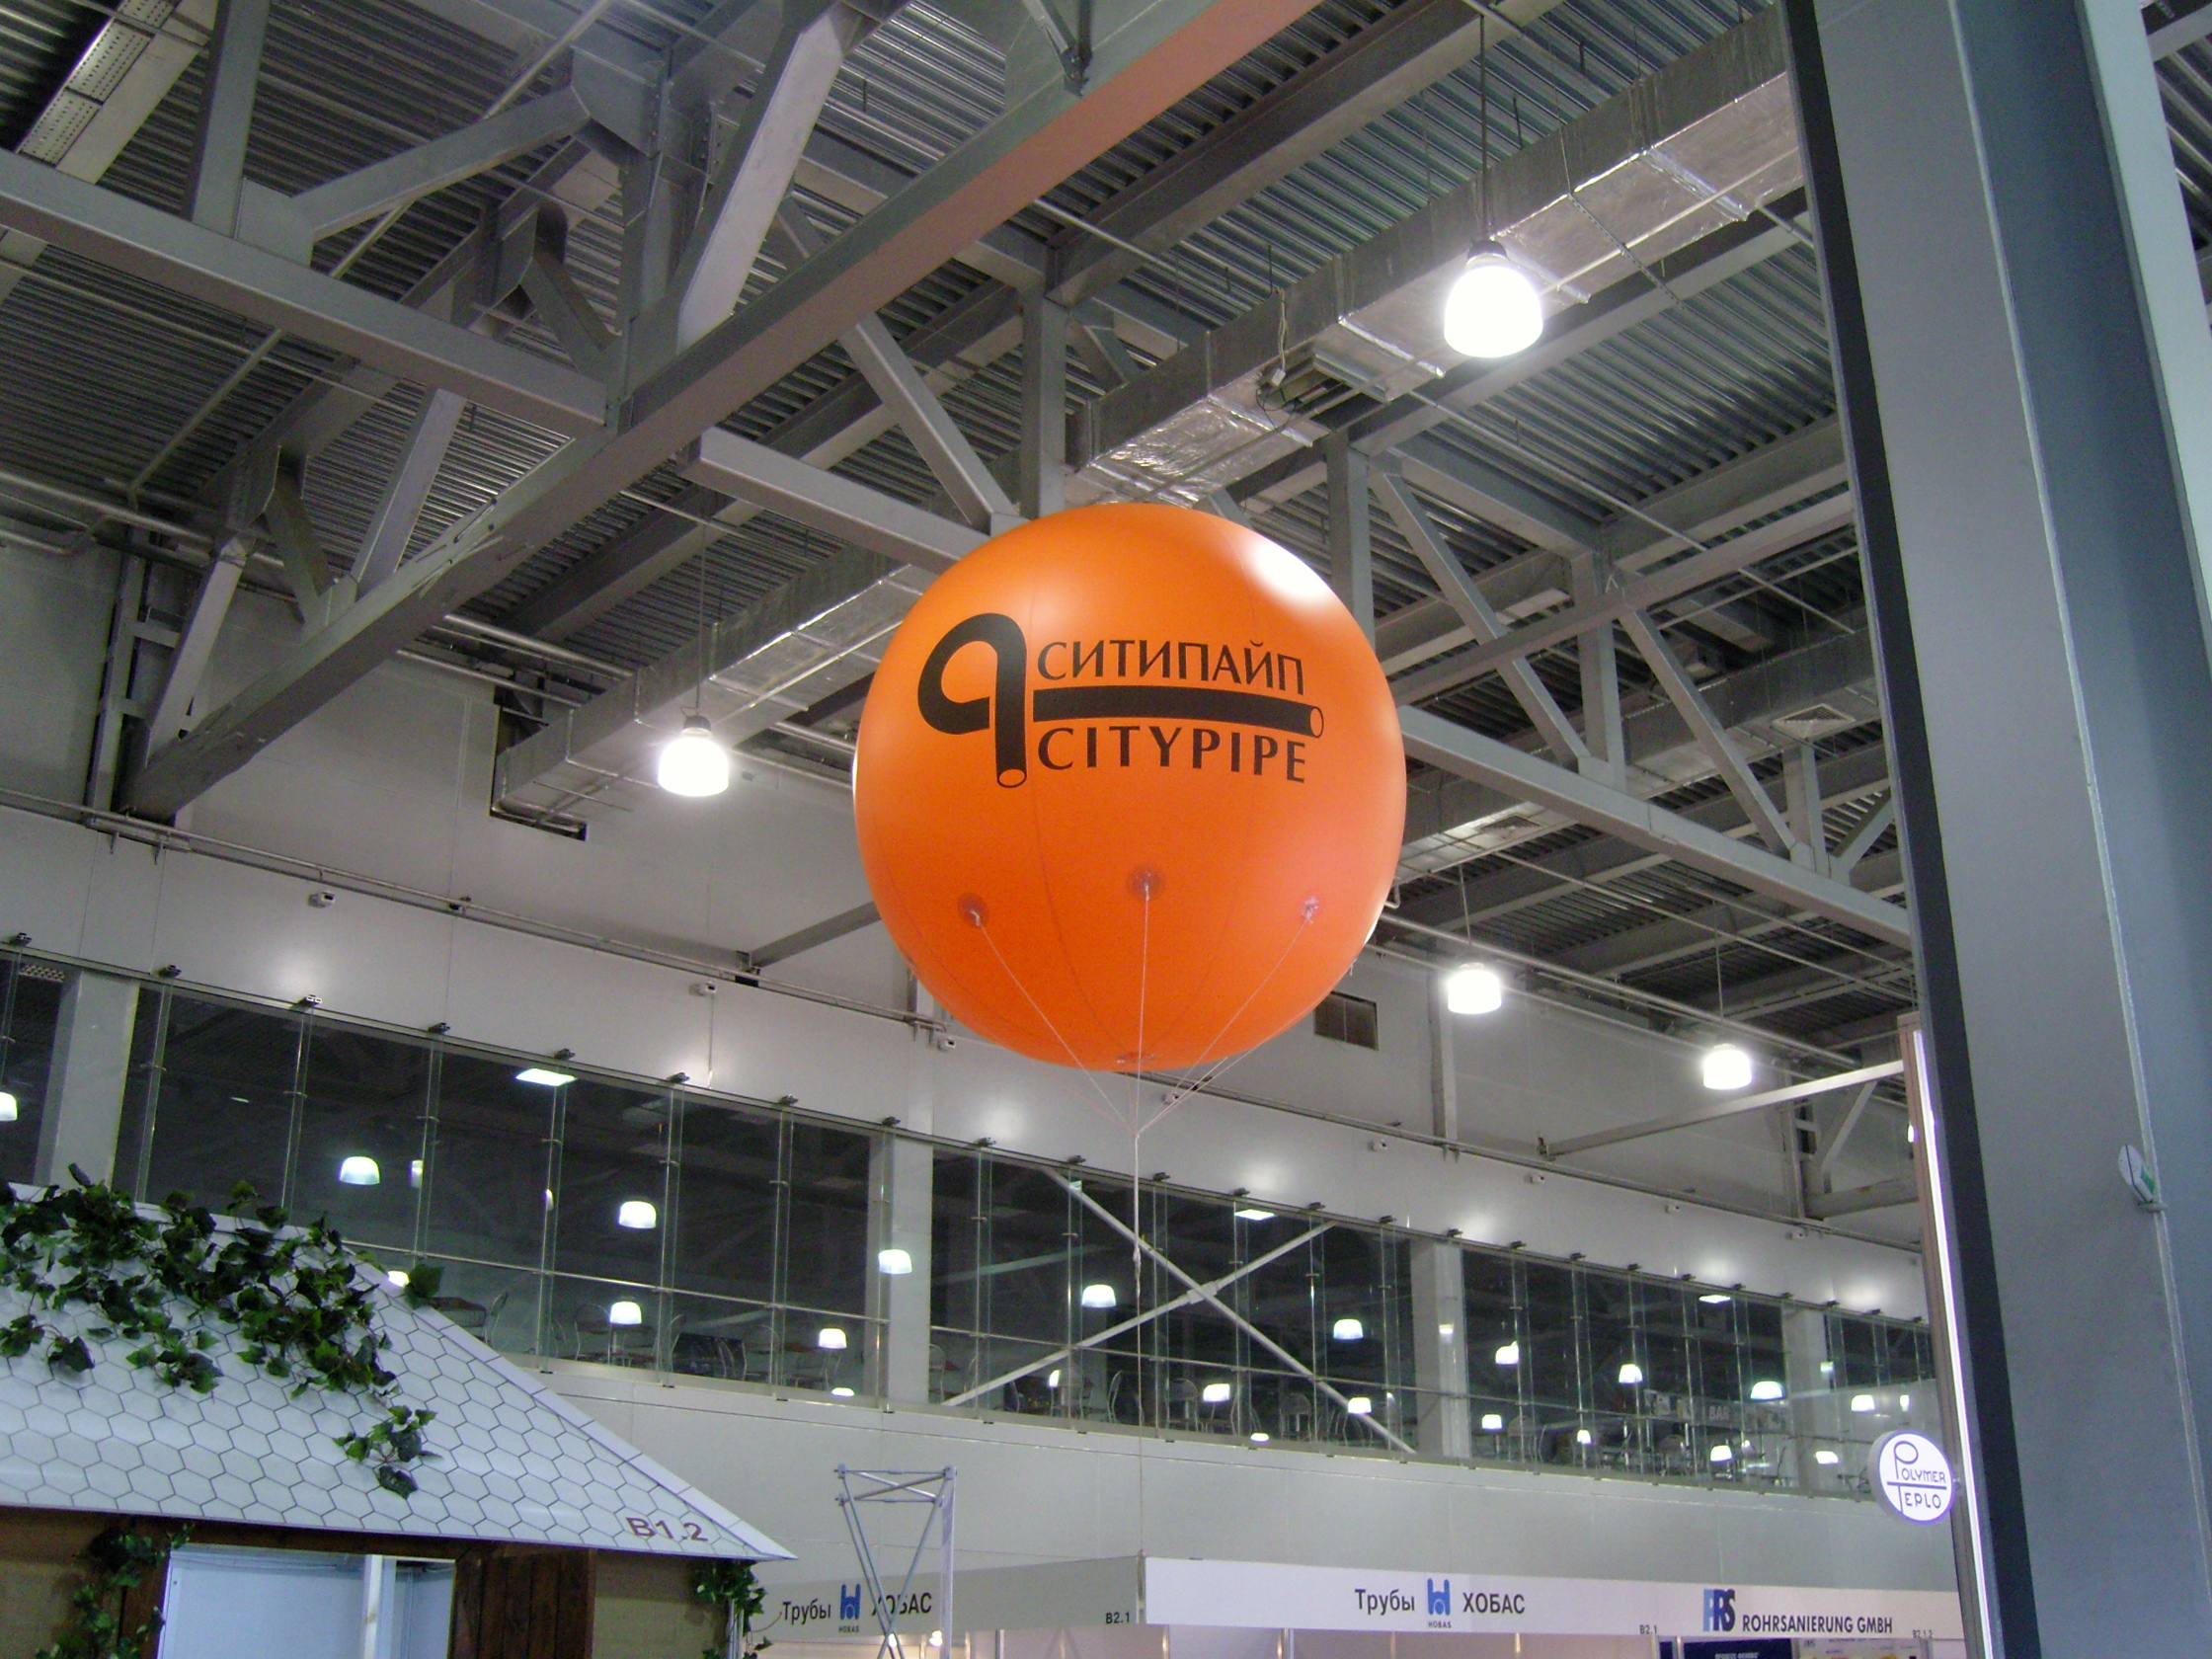 Большой рекламный шар Оранжевый